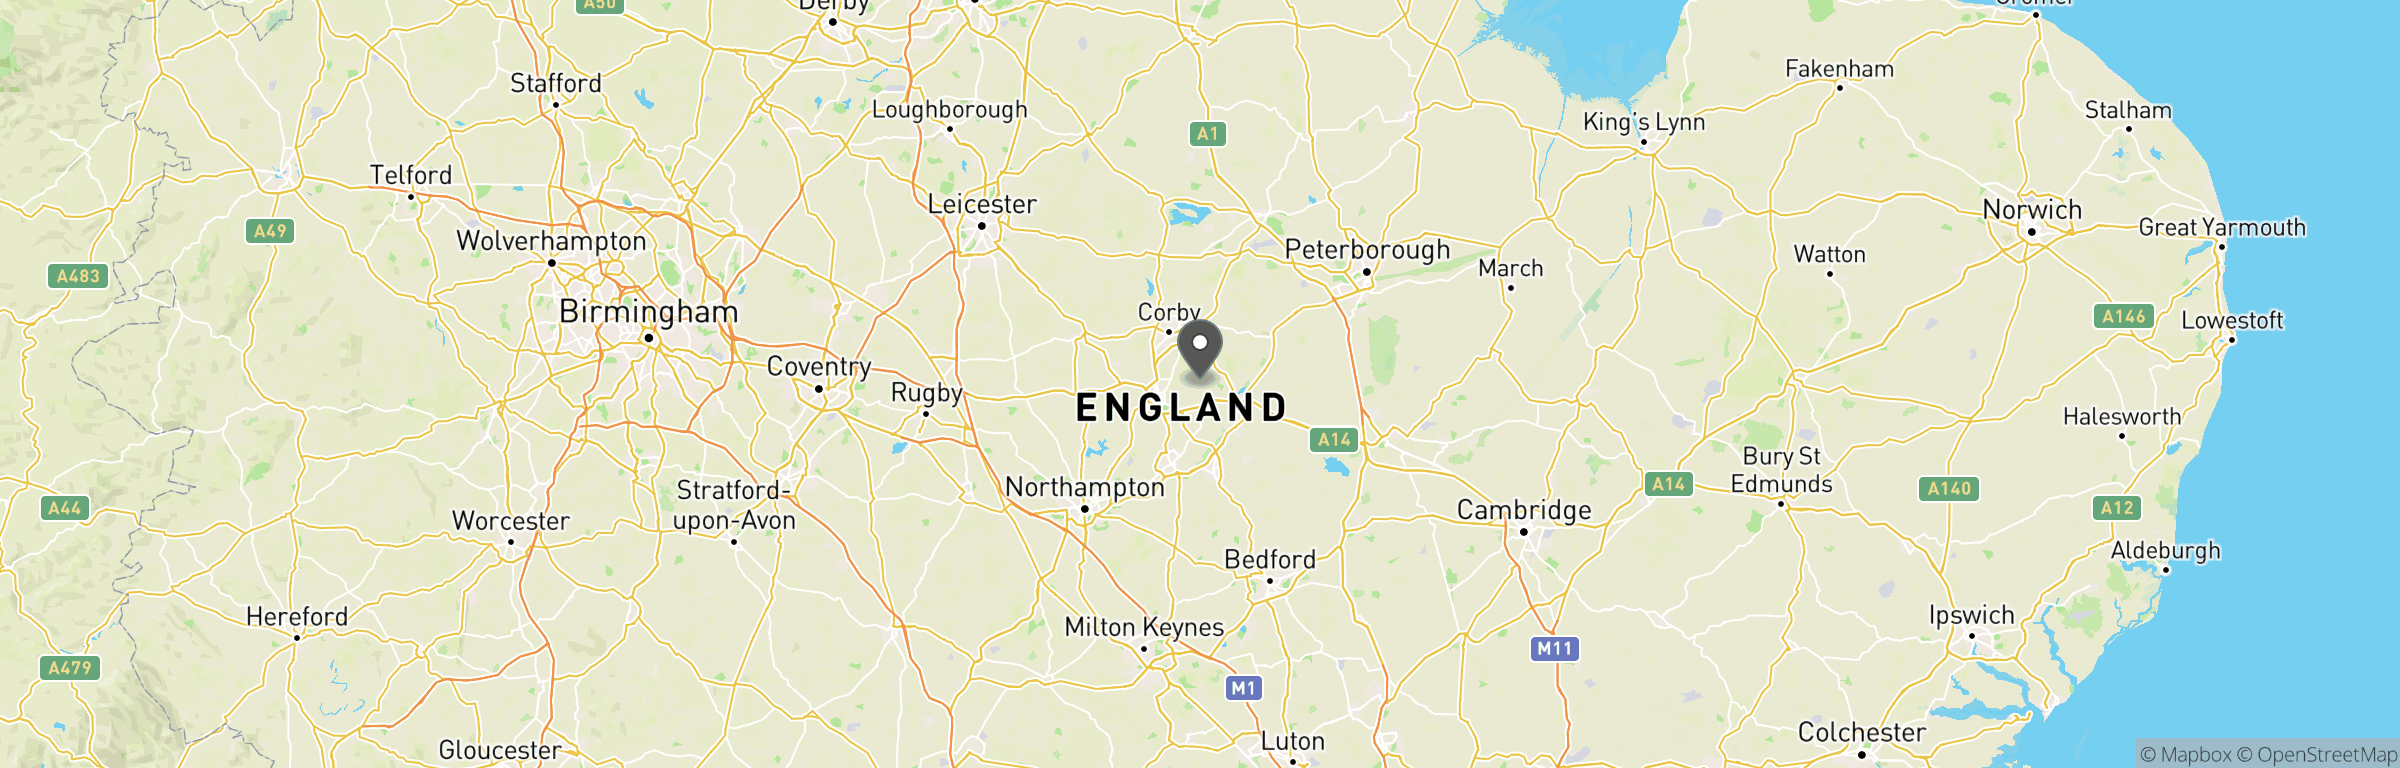 Location map of RAF Grafton Underwood